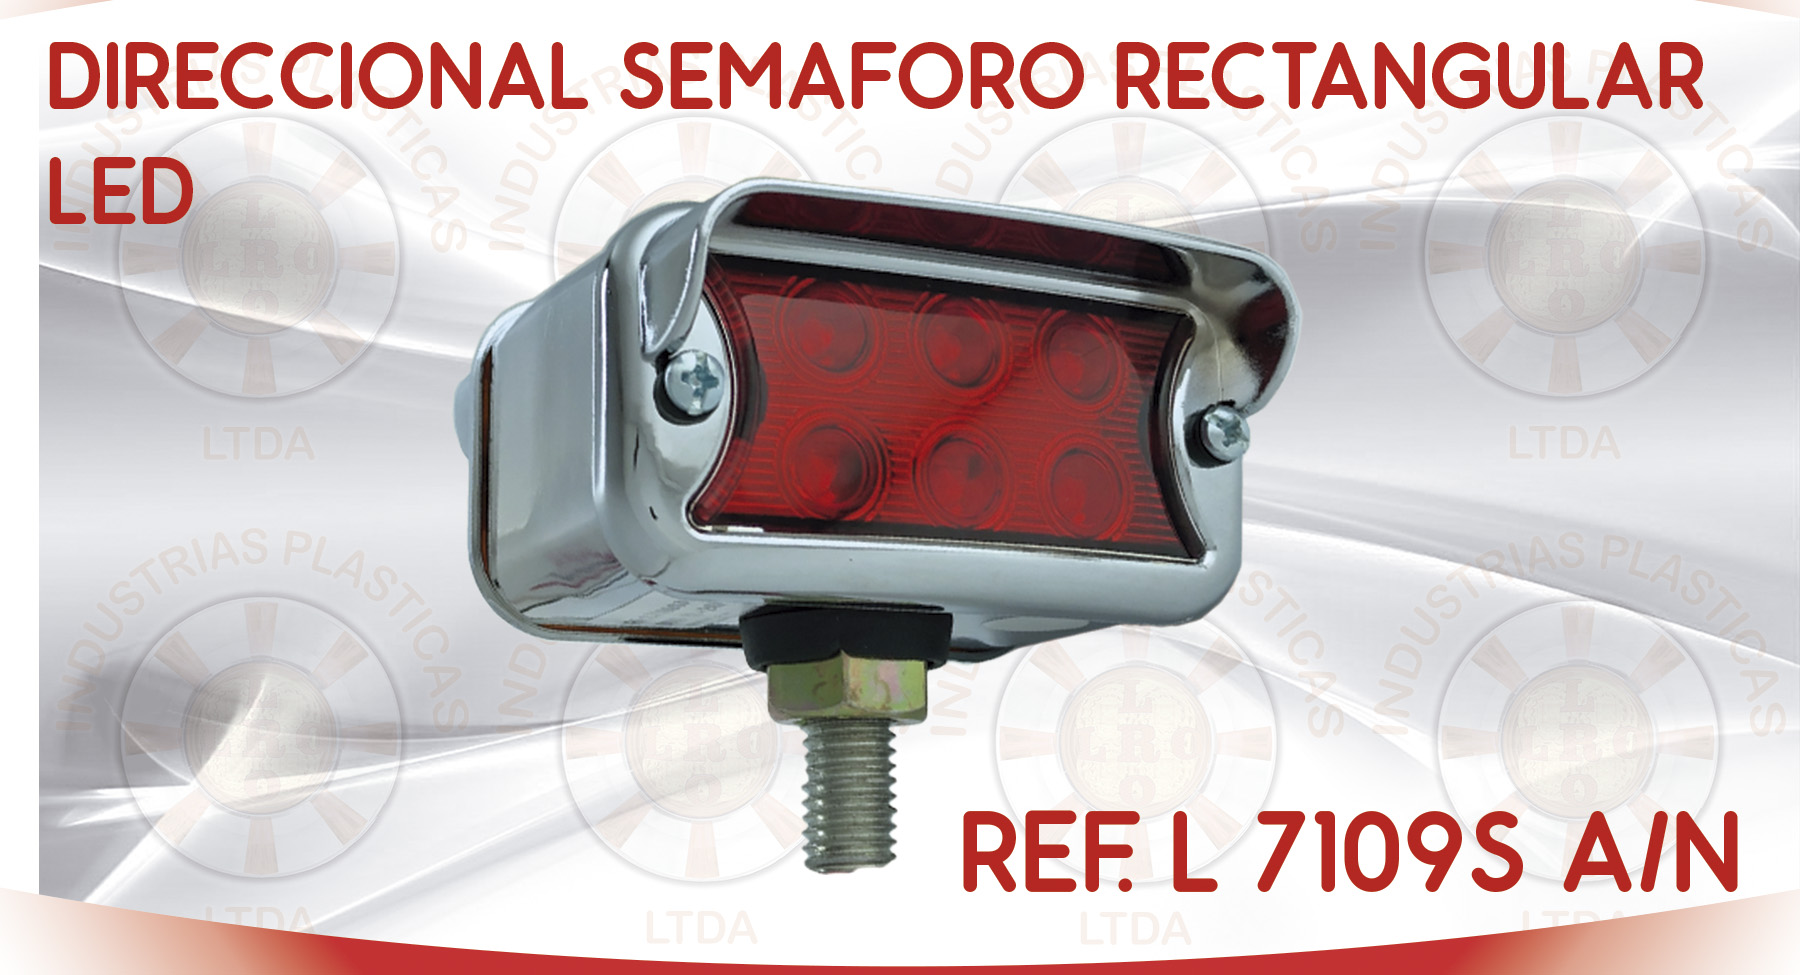 L 7109 S DIRECCIONAL SEMAFORO RECTANGULAR LED